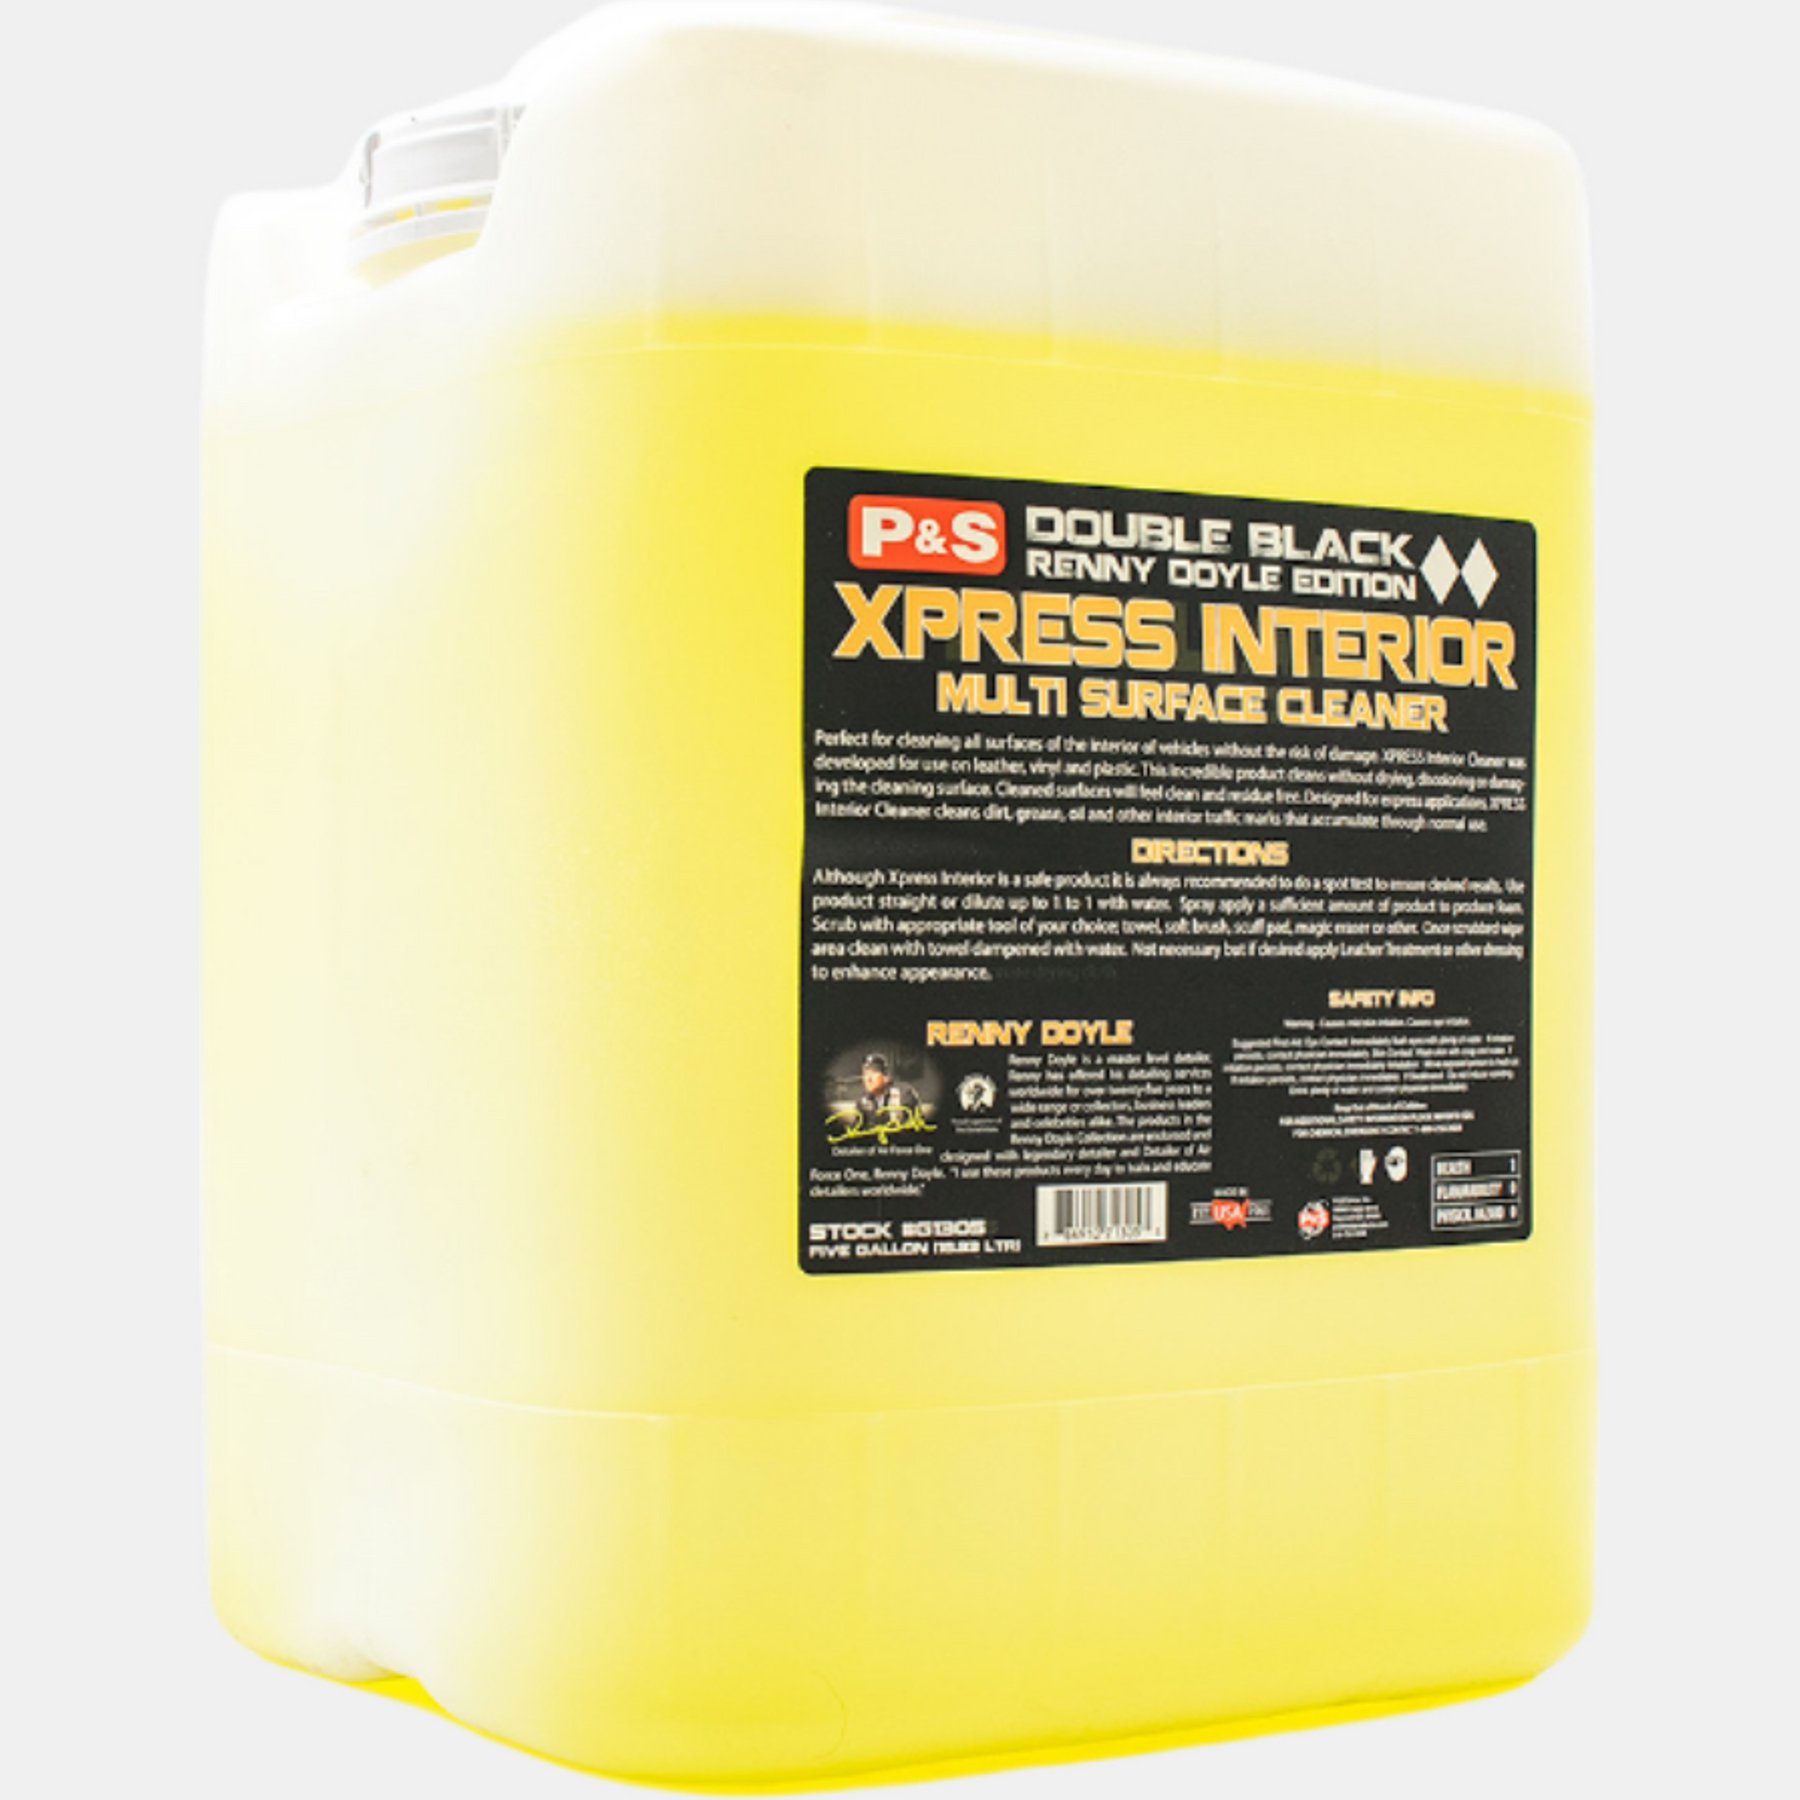 P&S Express Interior Cleaner Spray Bottles (32OZ)